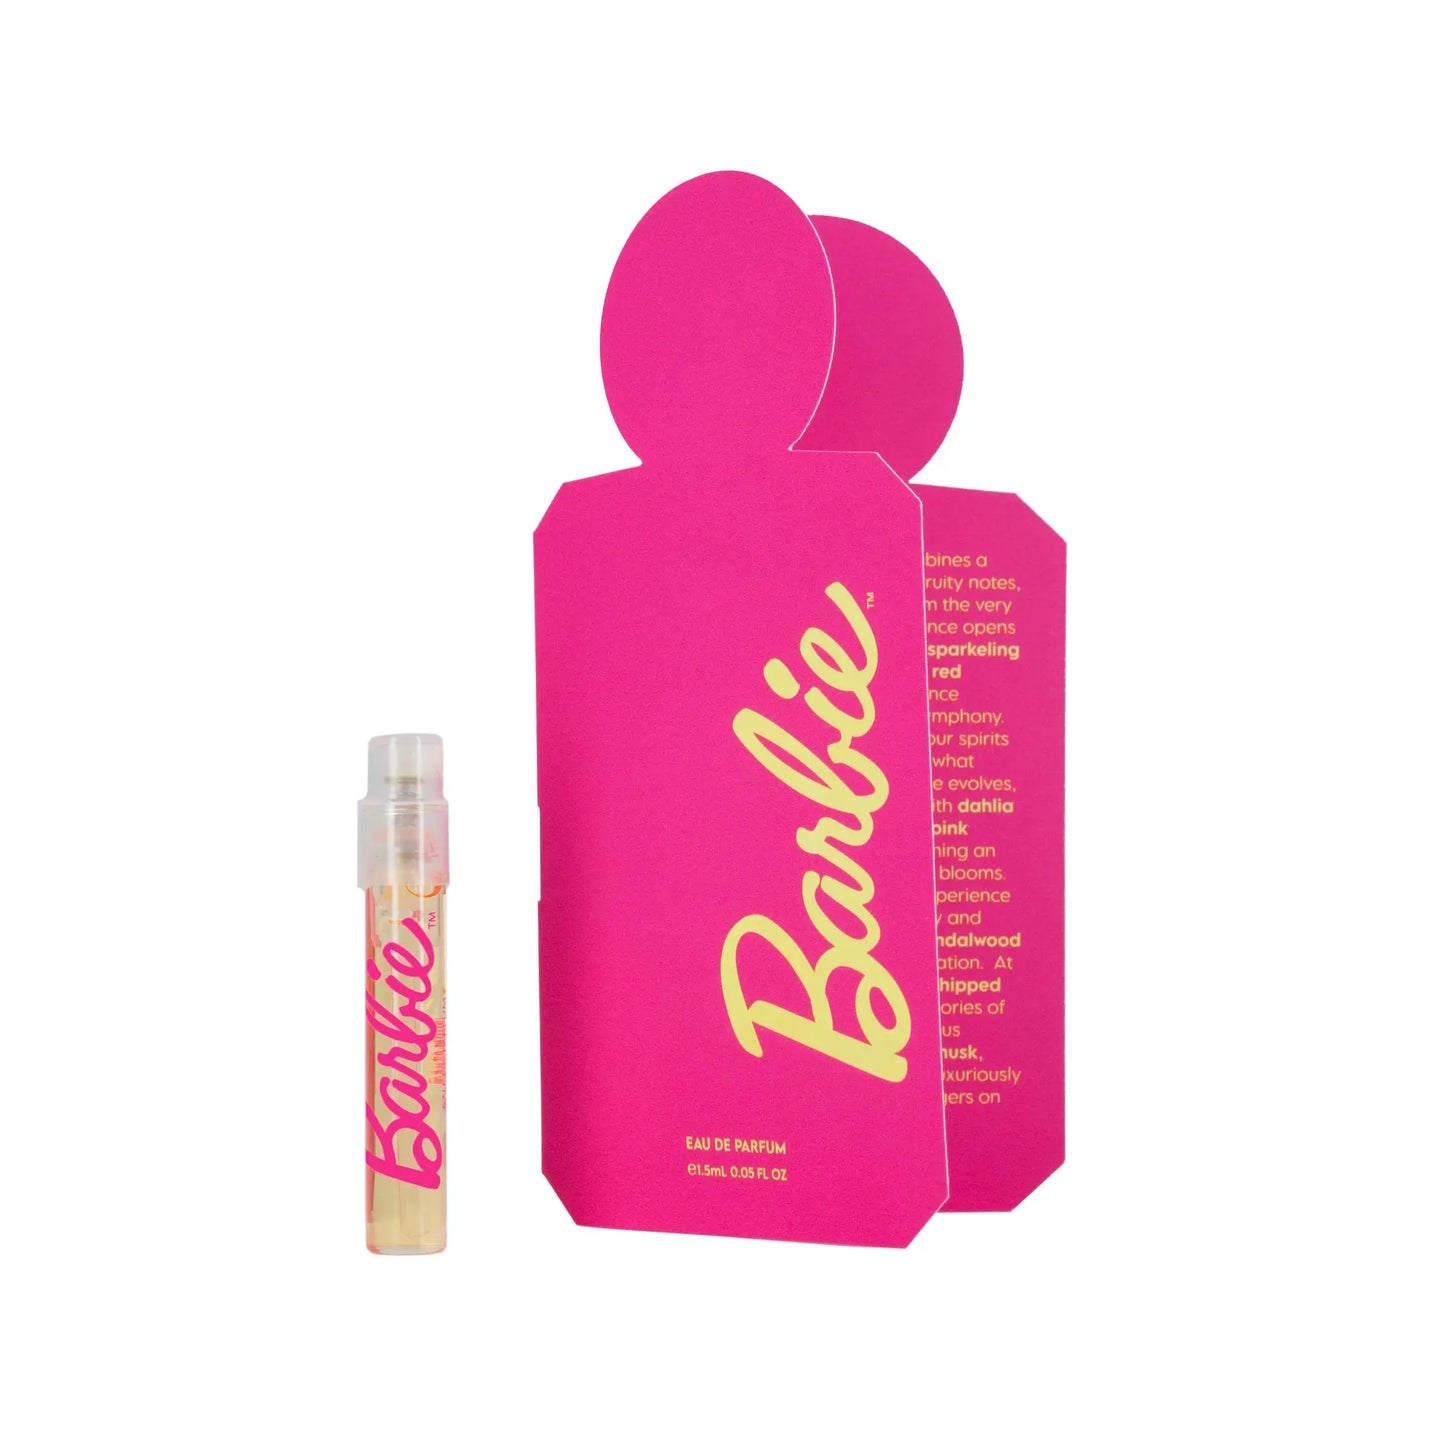 Barbie Eau de Parfum fragrance sample